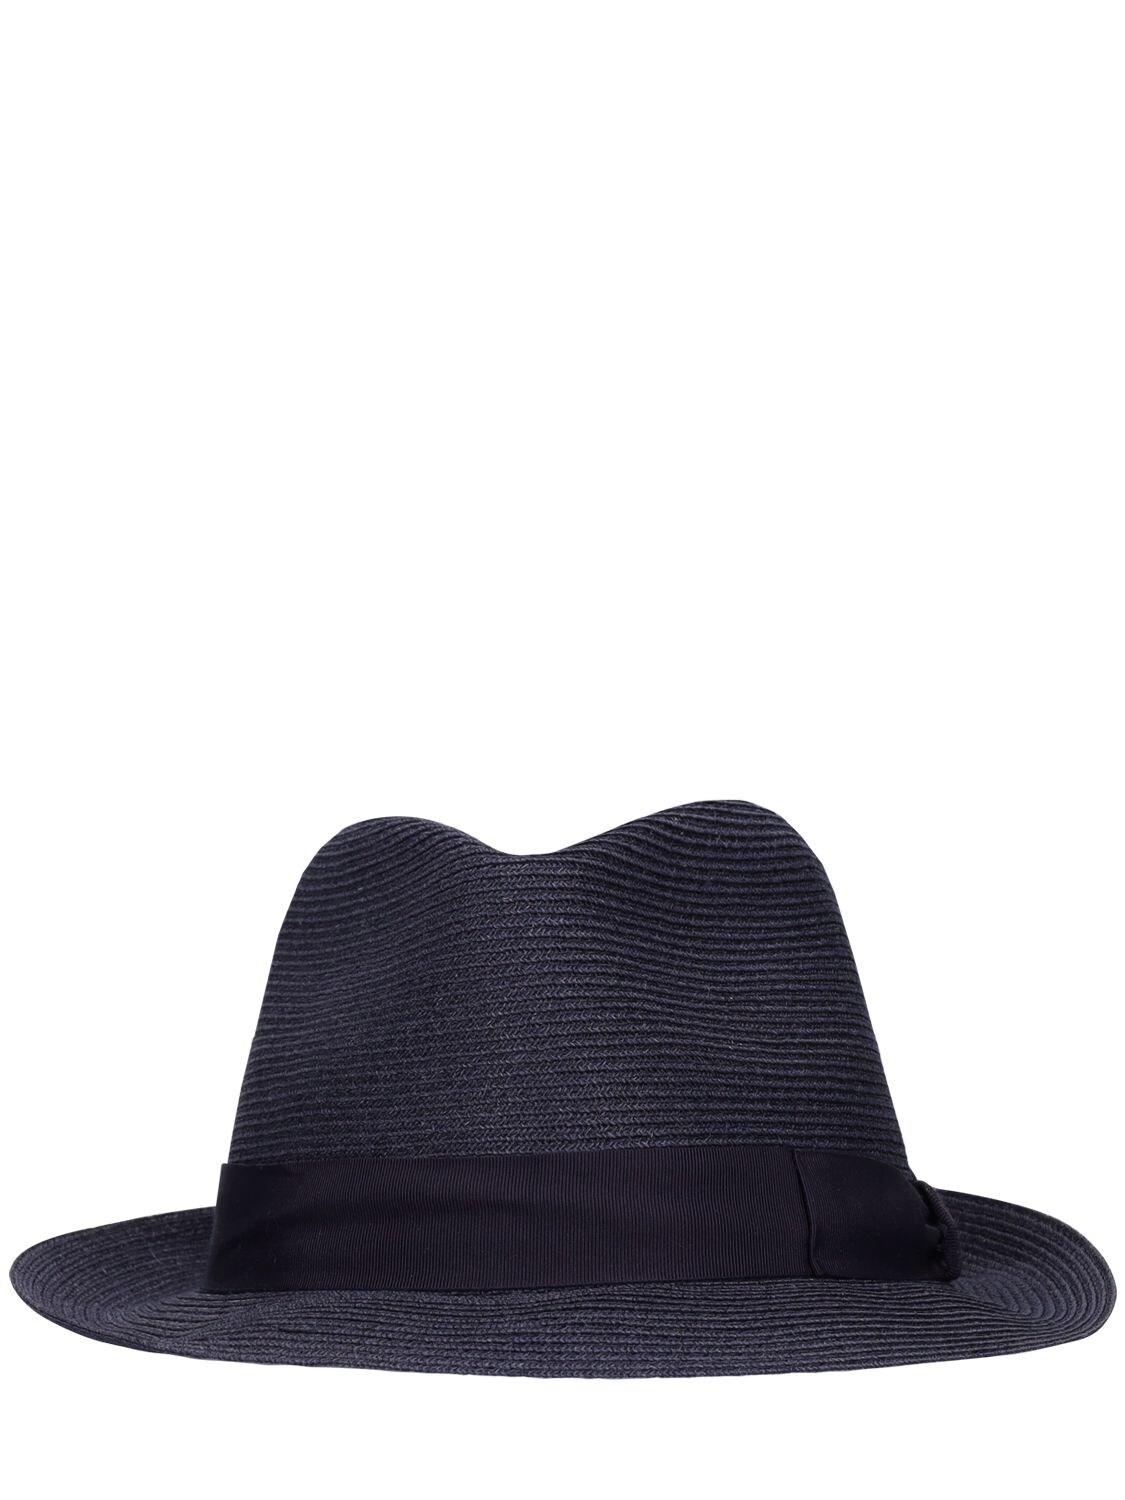 Borsalino Jules Narrow Brim Panama Hat in Blue for Men | Lyst UK